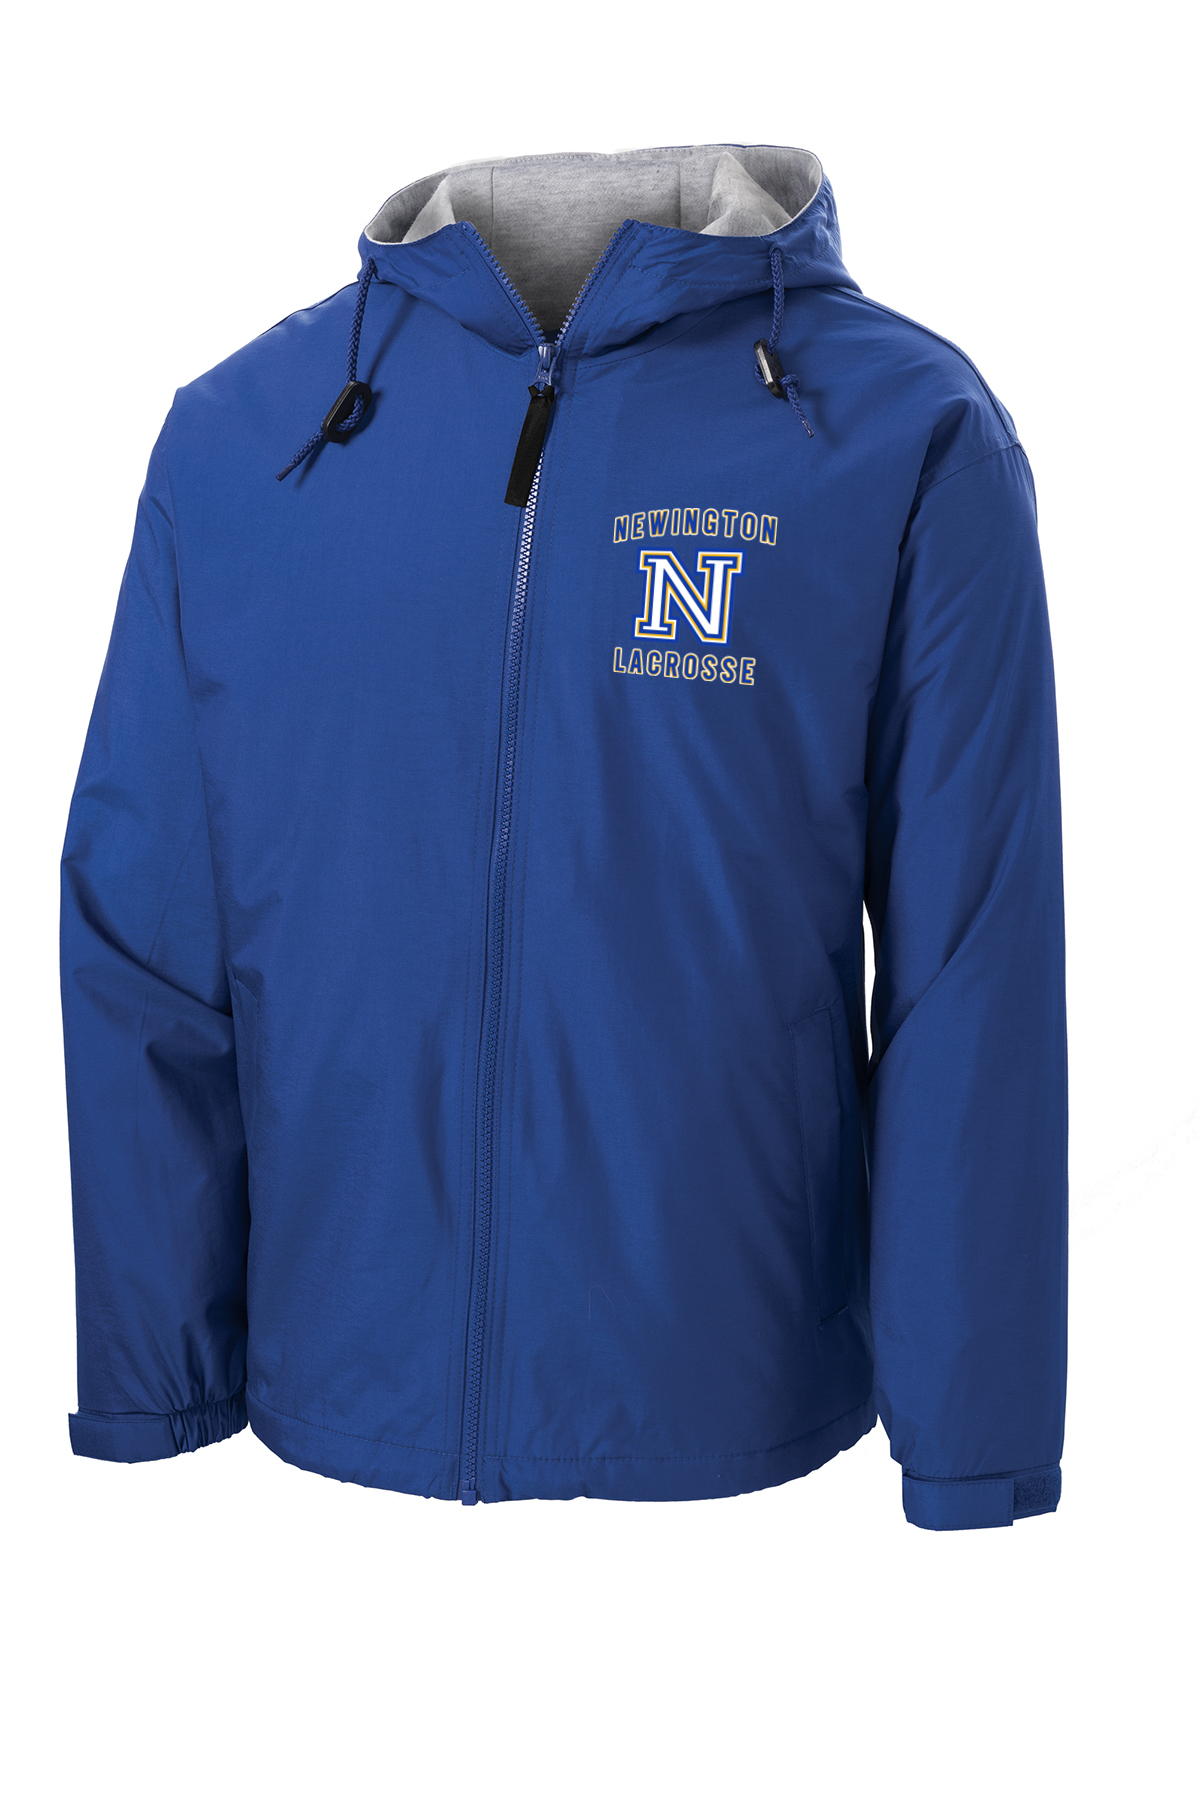 Newington Lacrosse Royal Hooded Jacket